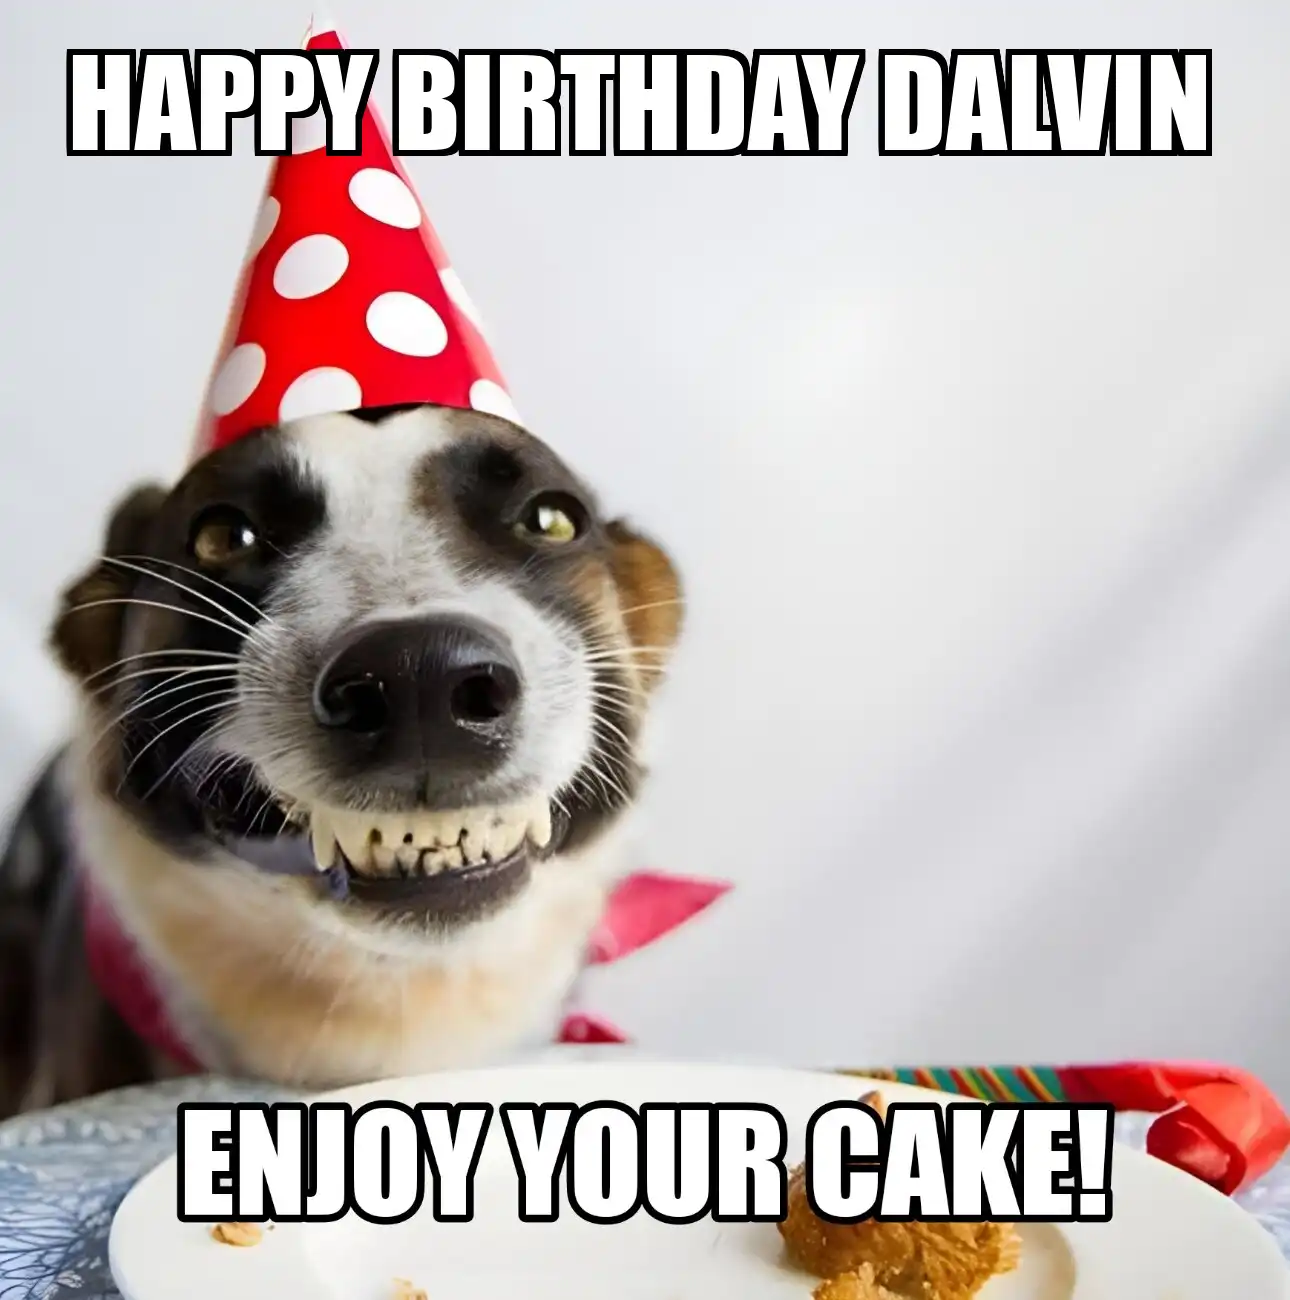 Happy Birthday Dalvin Enjoy Your Cake Dog Meme